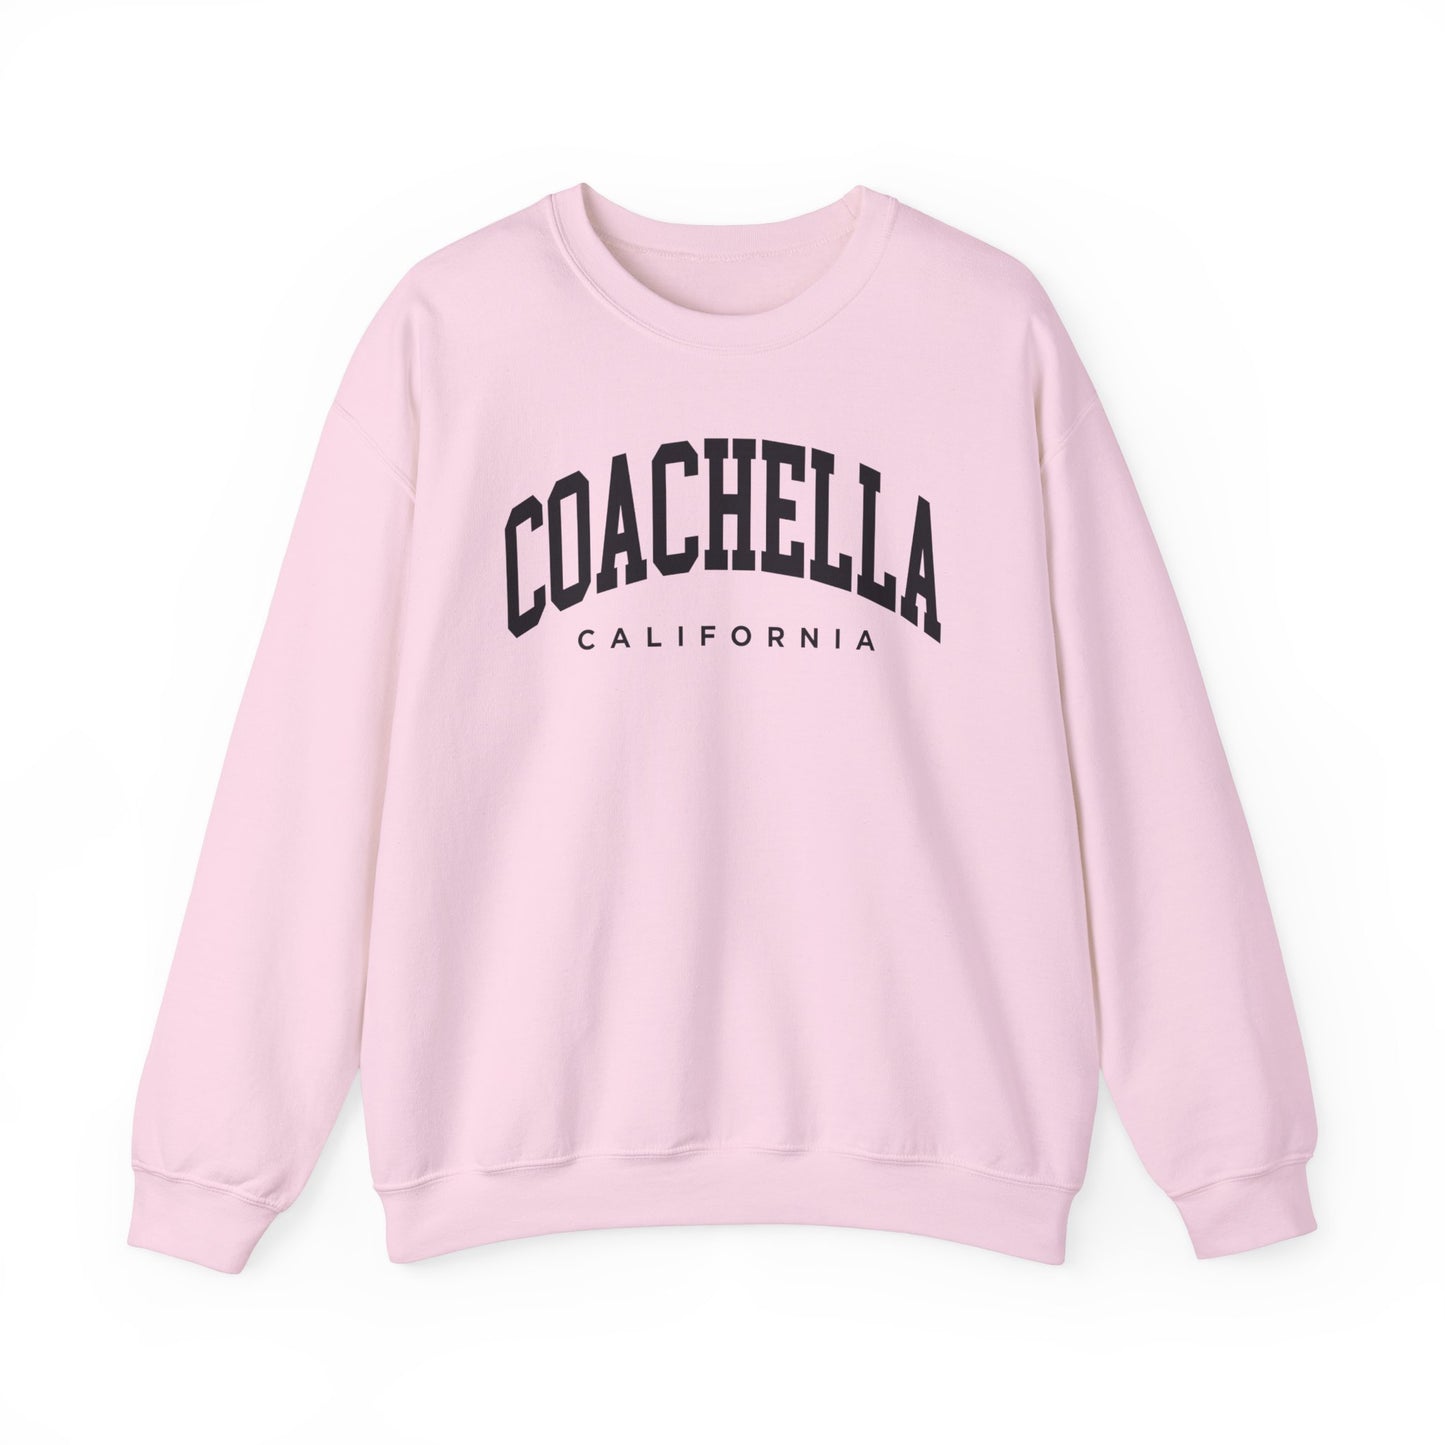 Coachella California Sweatshirt